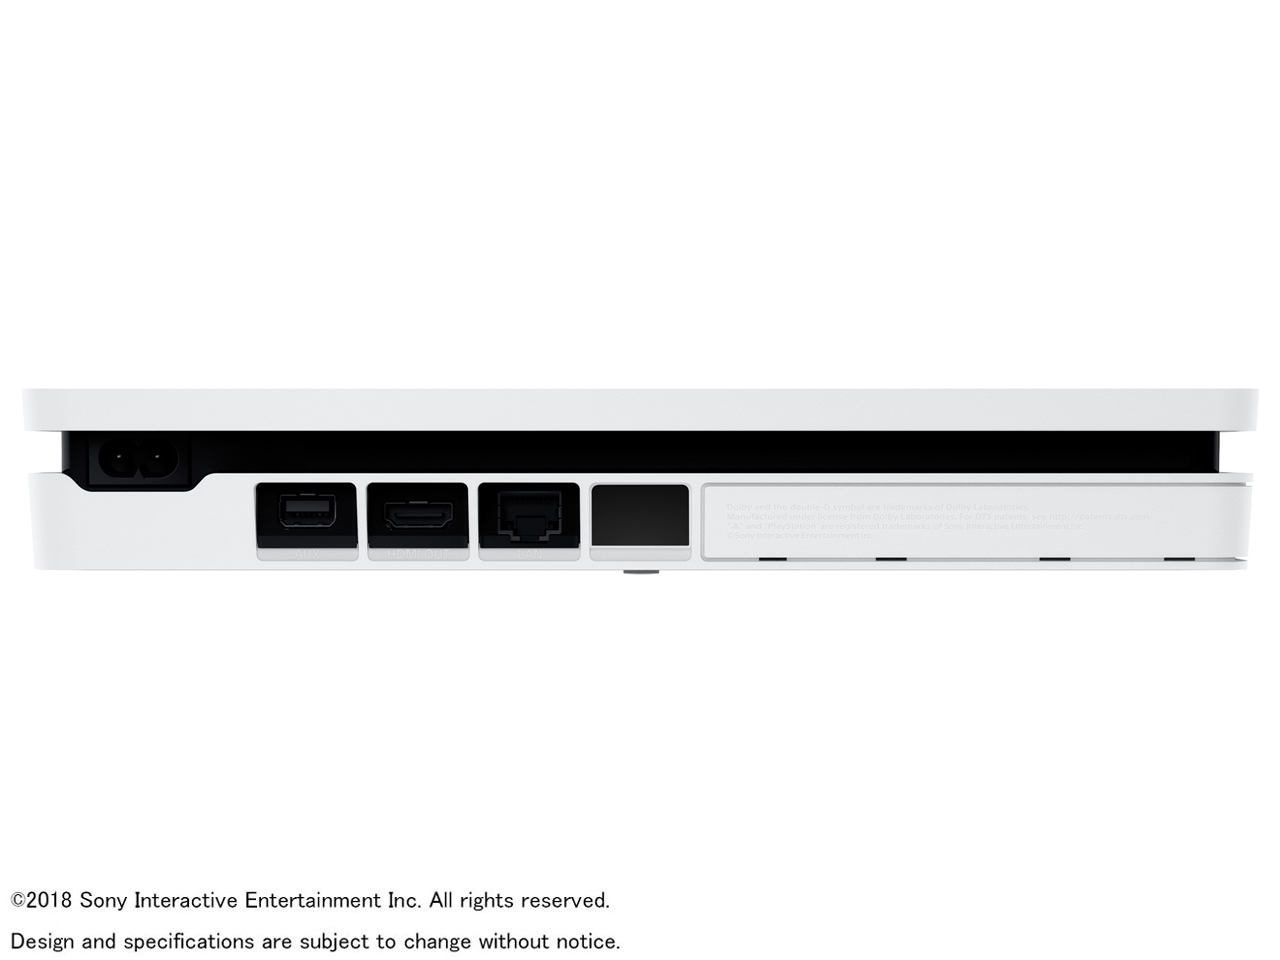 価格.com - 『本体 横置き 背面』 プレイステーション4 CUH-2200AB02 [500GB グレイシャー・ホワイト] の製品画像